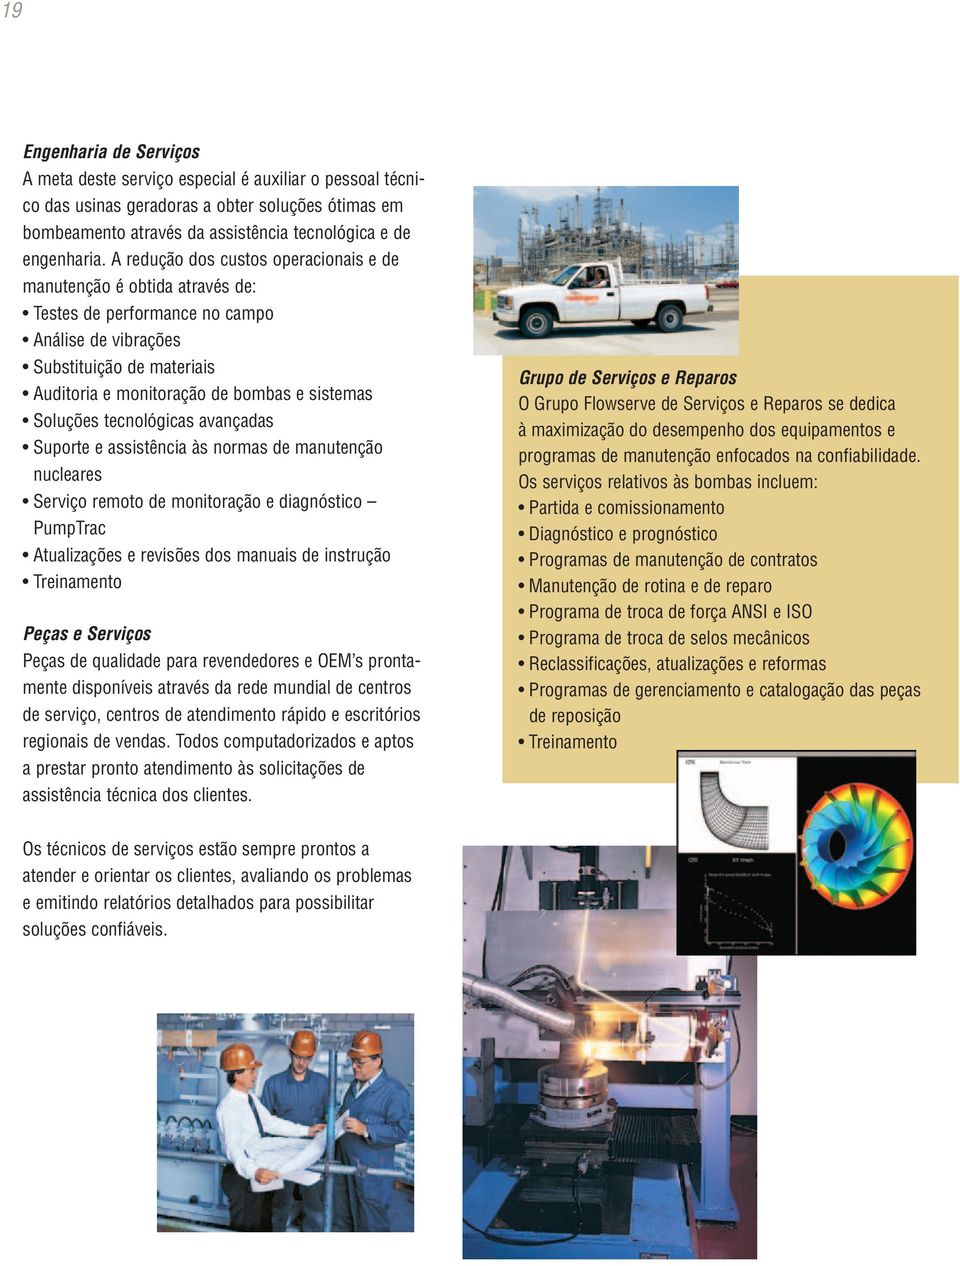 Soluções tecnológicas avançadas Suporte e assistência às normas de manutenção nucleares Serviço remoto de monitoração e diagnóstico PumpTrac Atualizações e revisões dos manuais de instrução